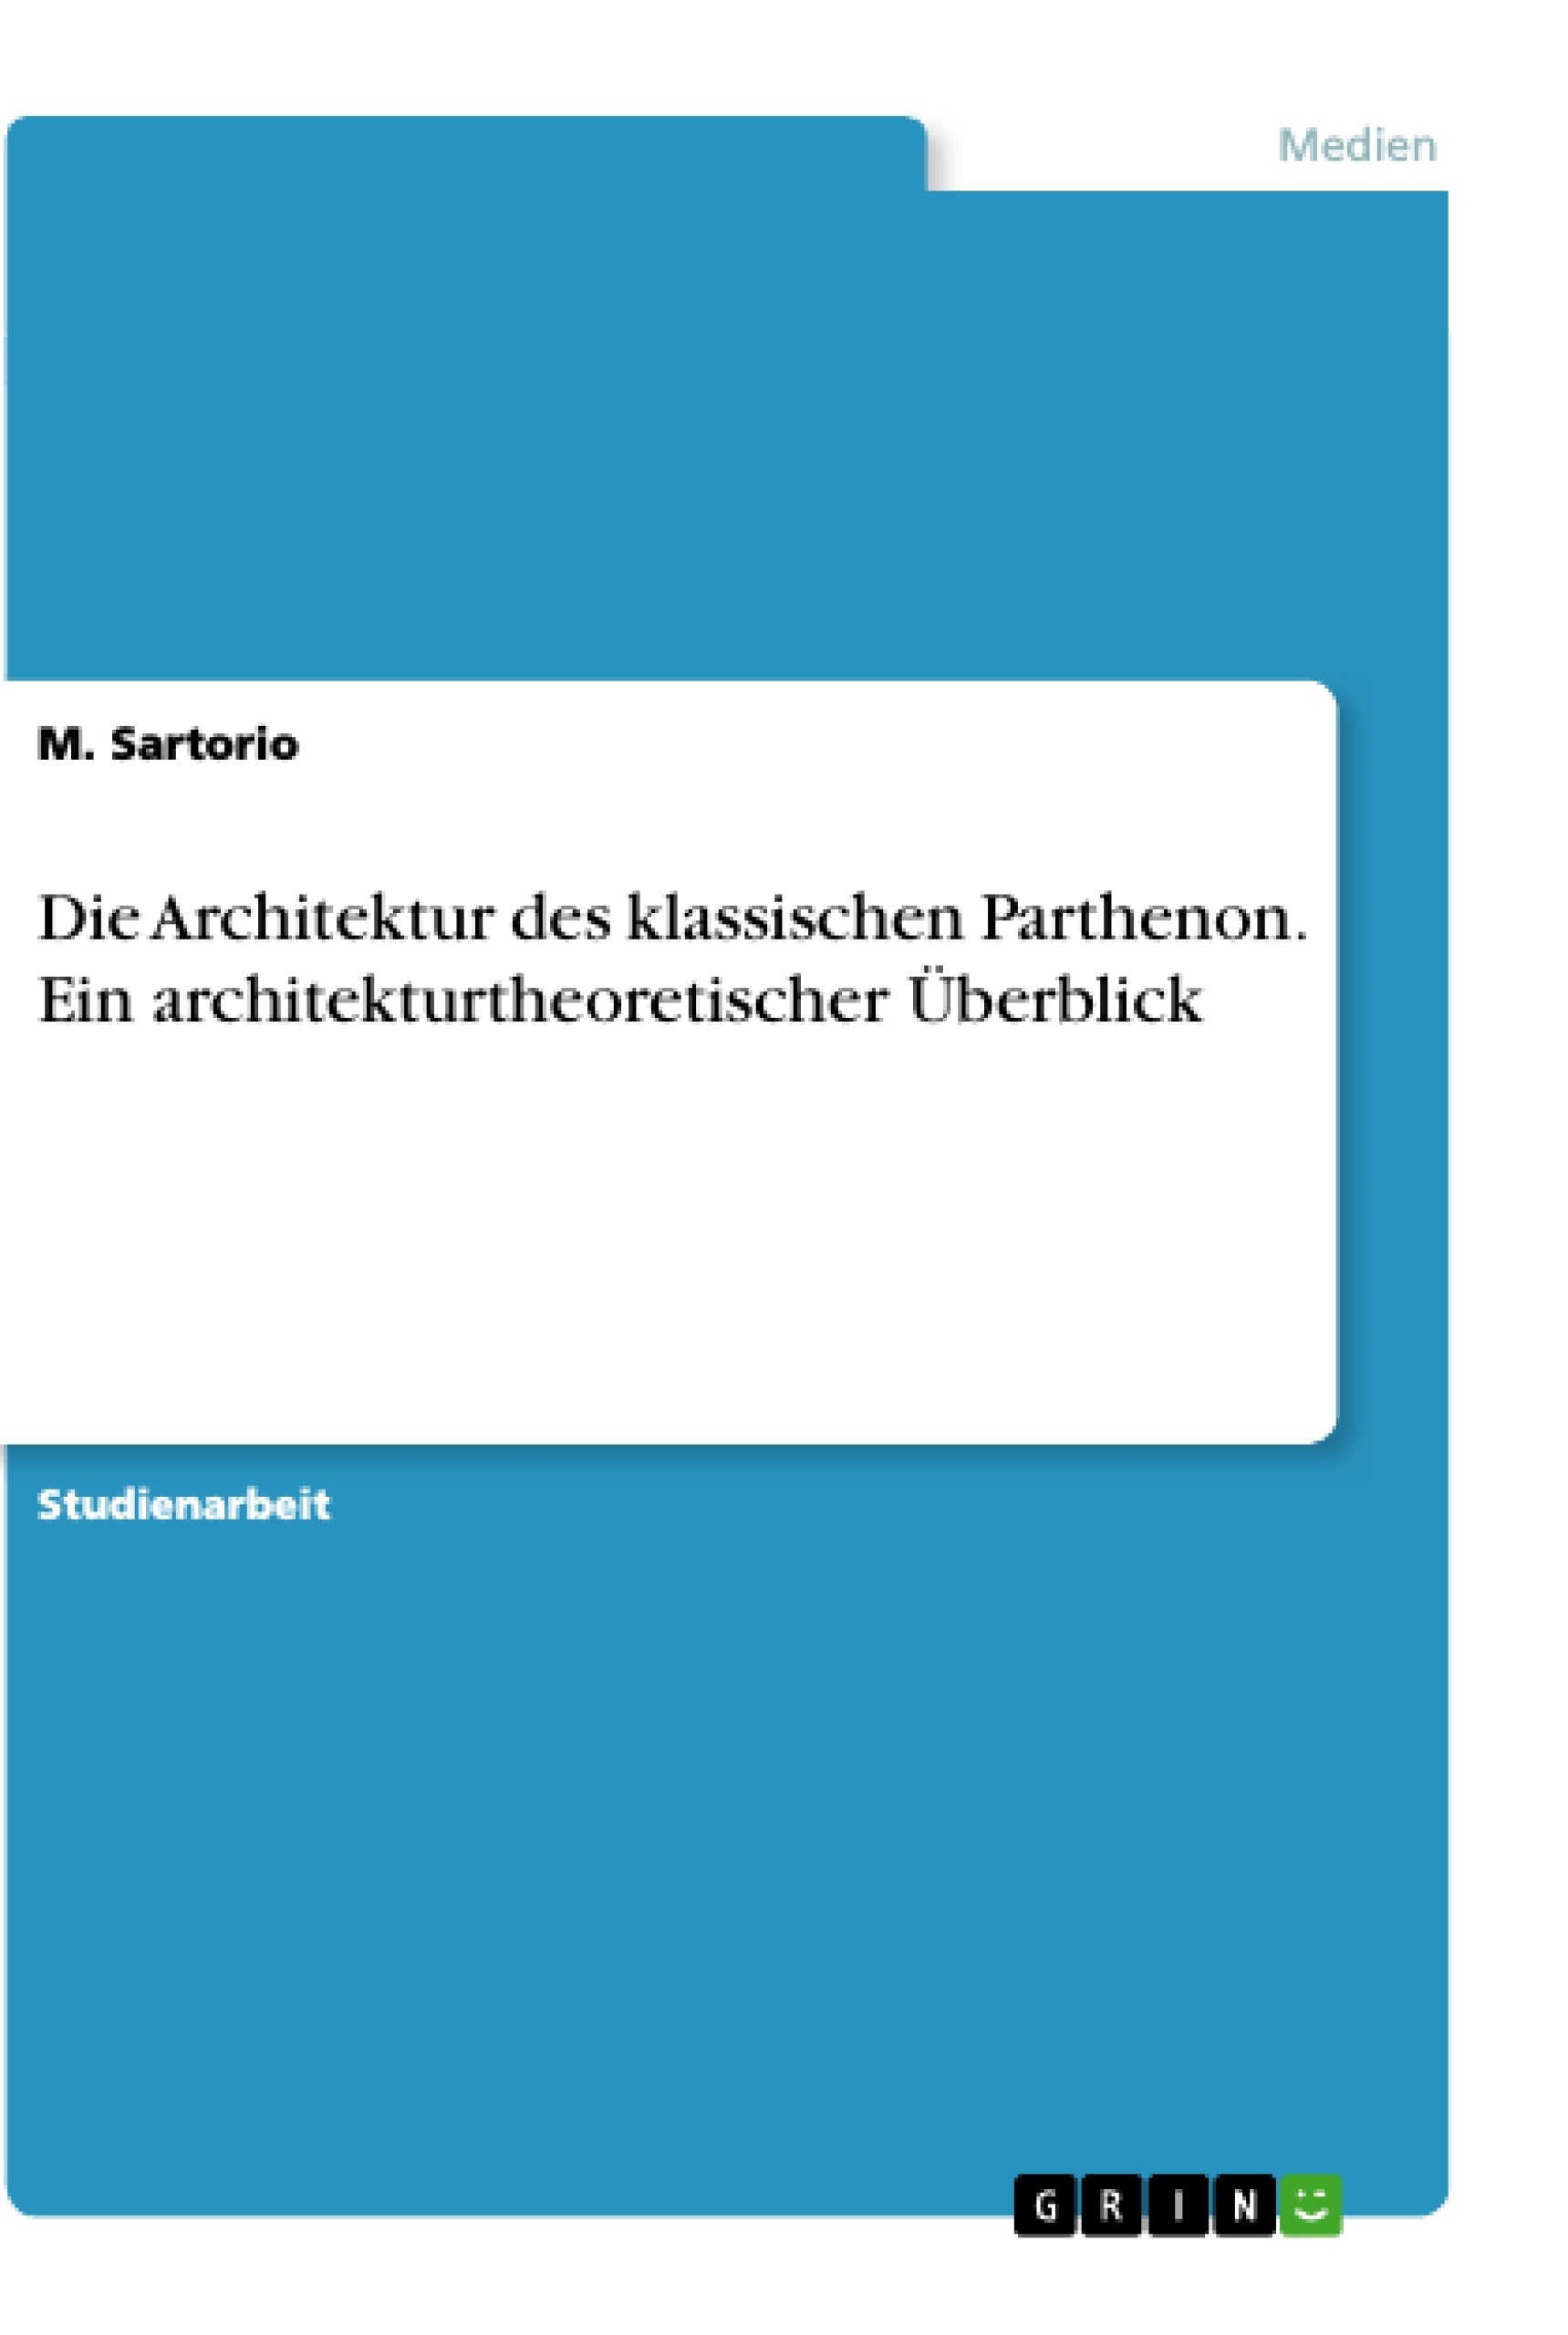 Title: Die Architektur des klassischen Parthenon. Ein architekturtheoretischer Überblick